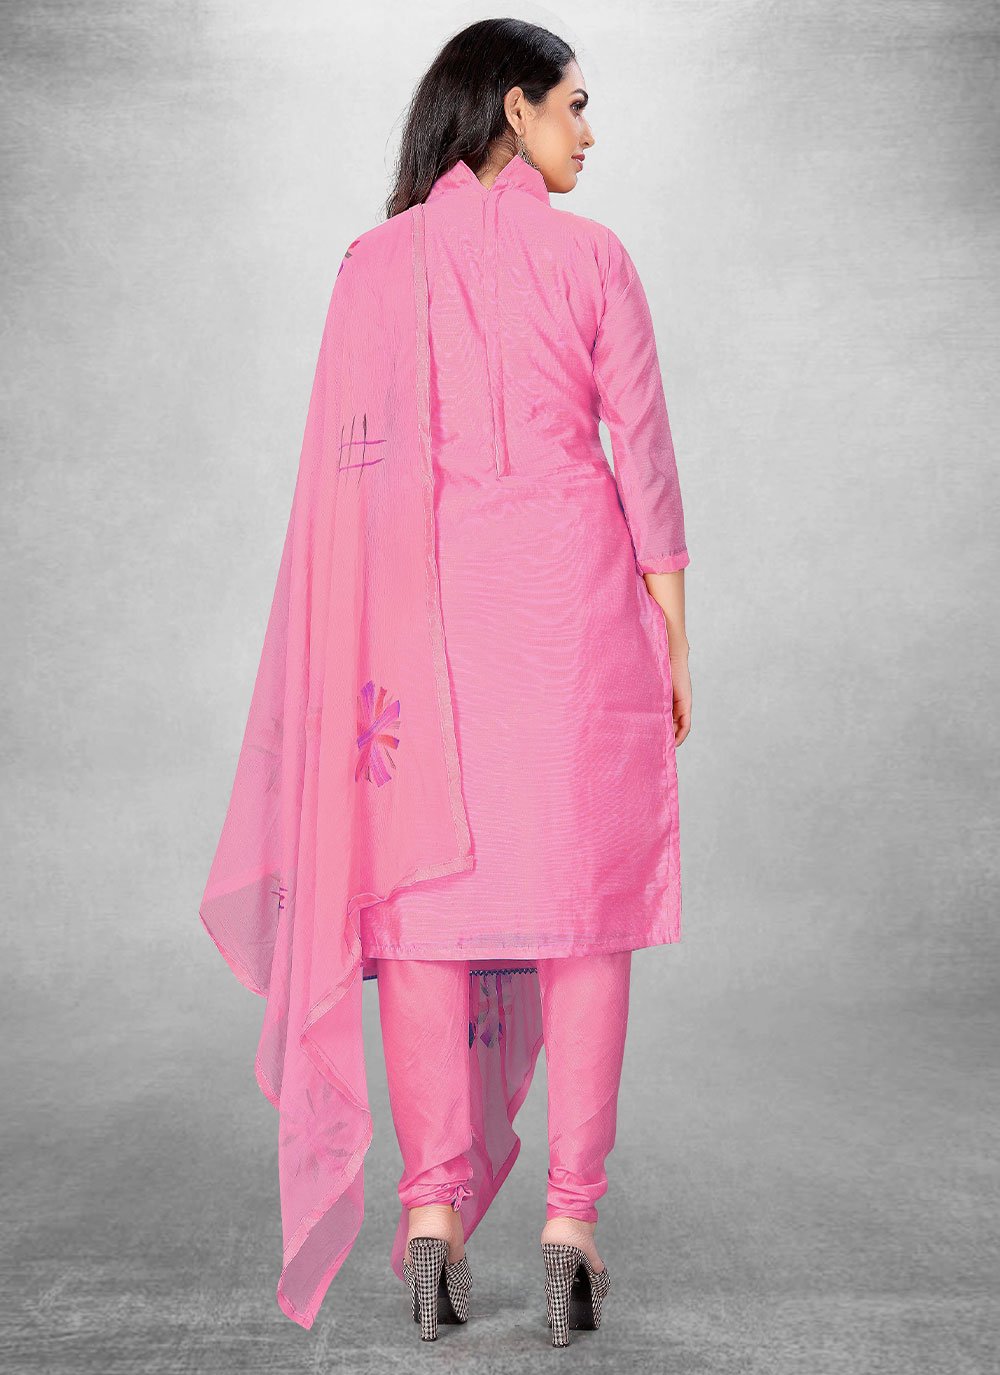 Churidar Suit Cotton Pink Hand Work Salwar Kameez